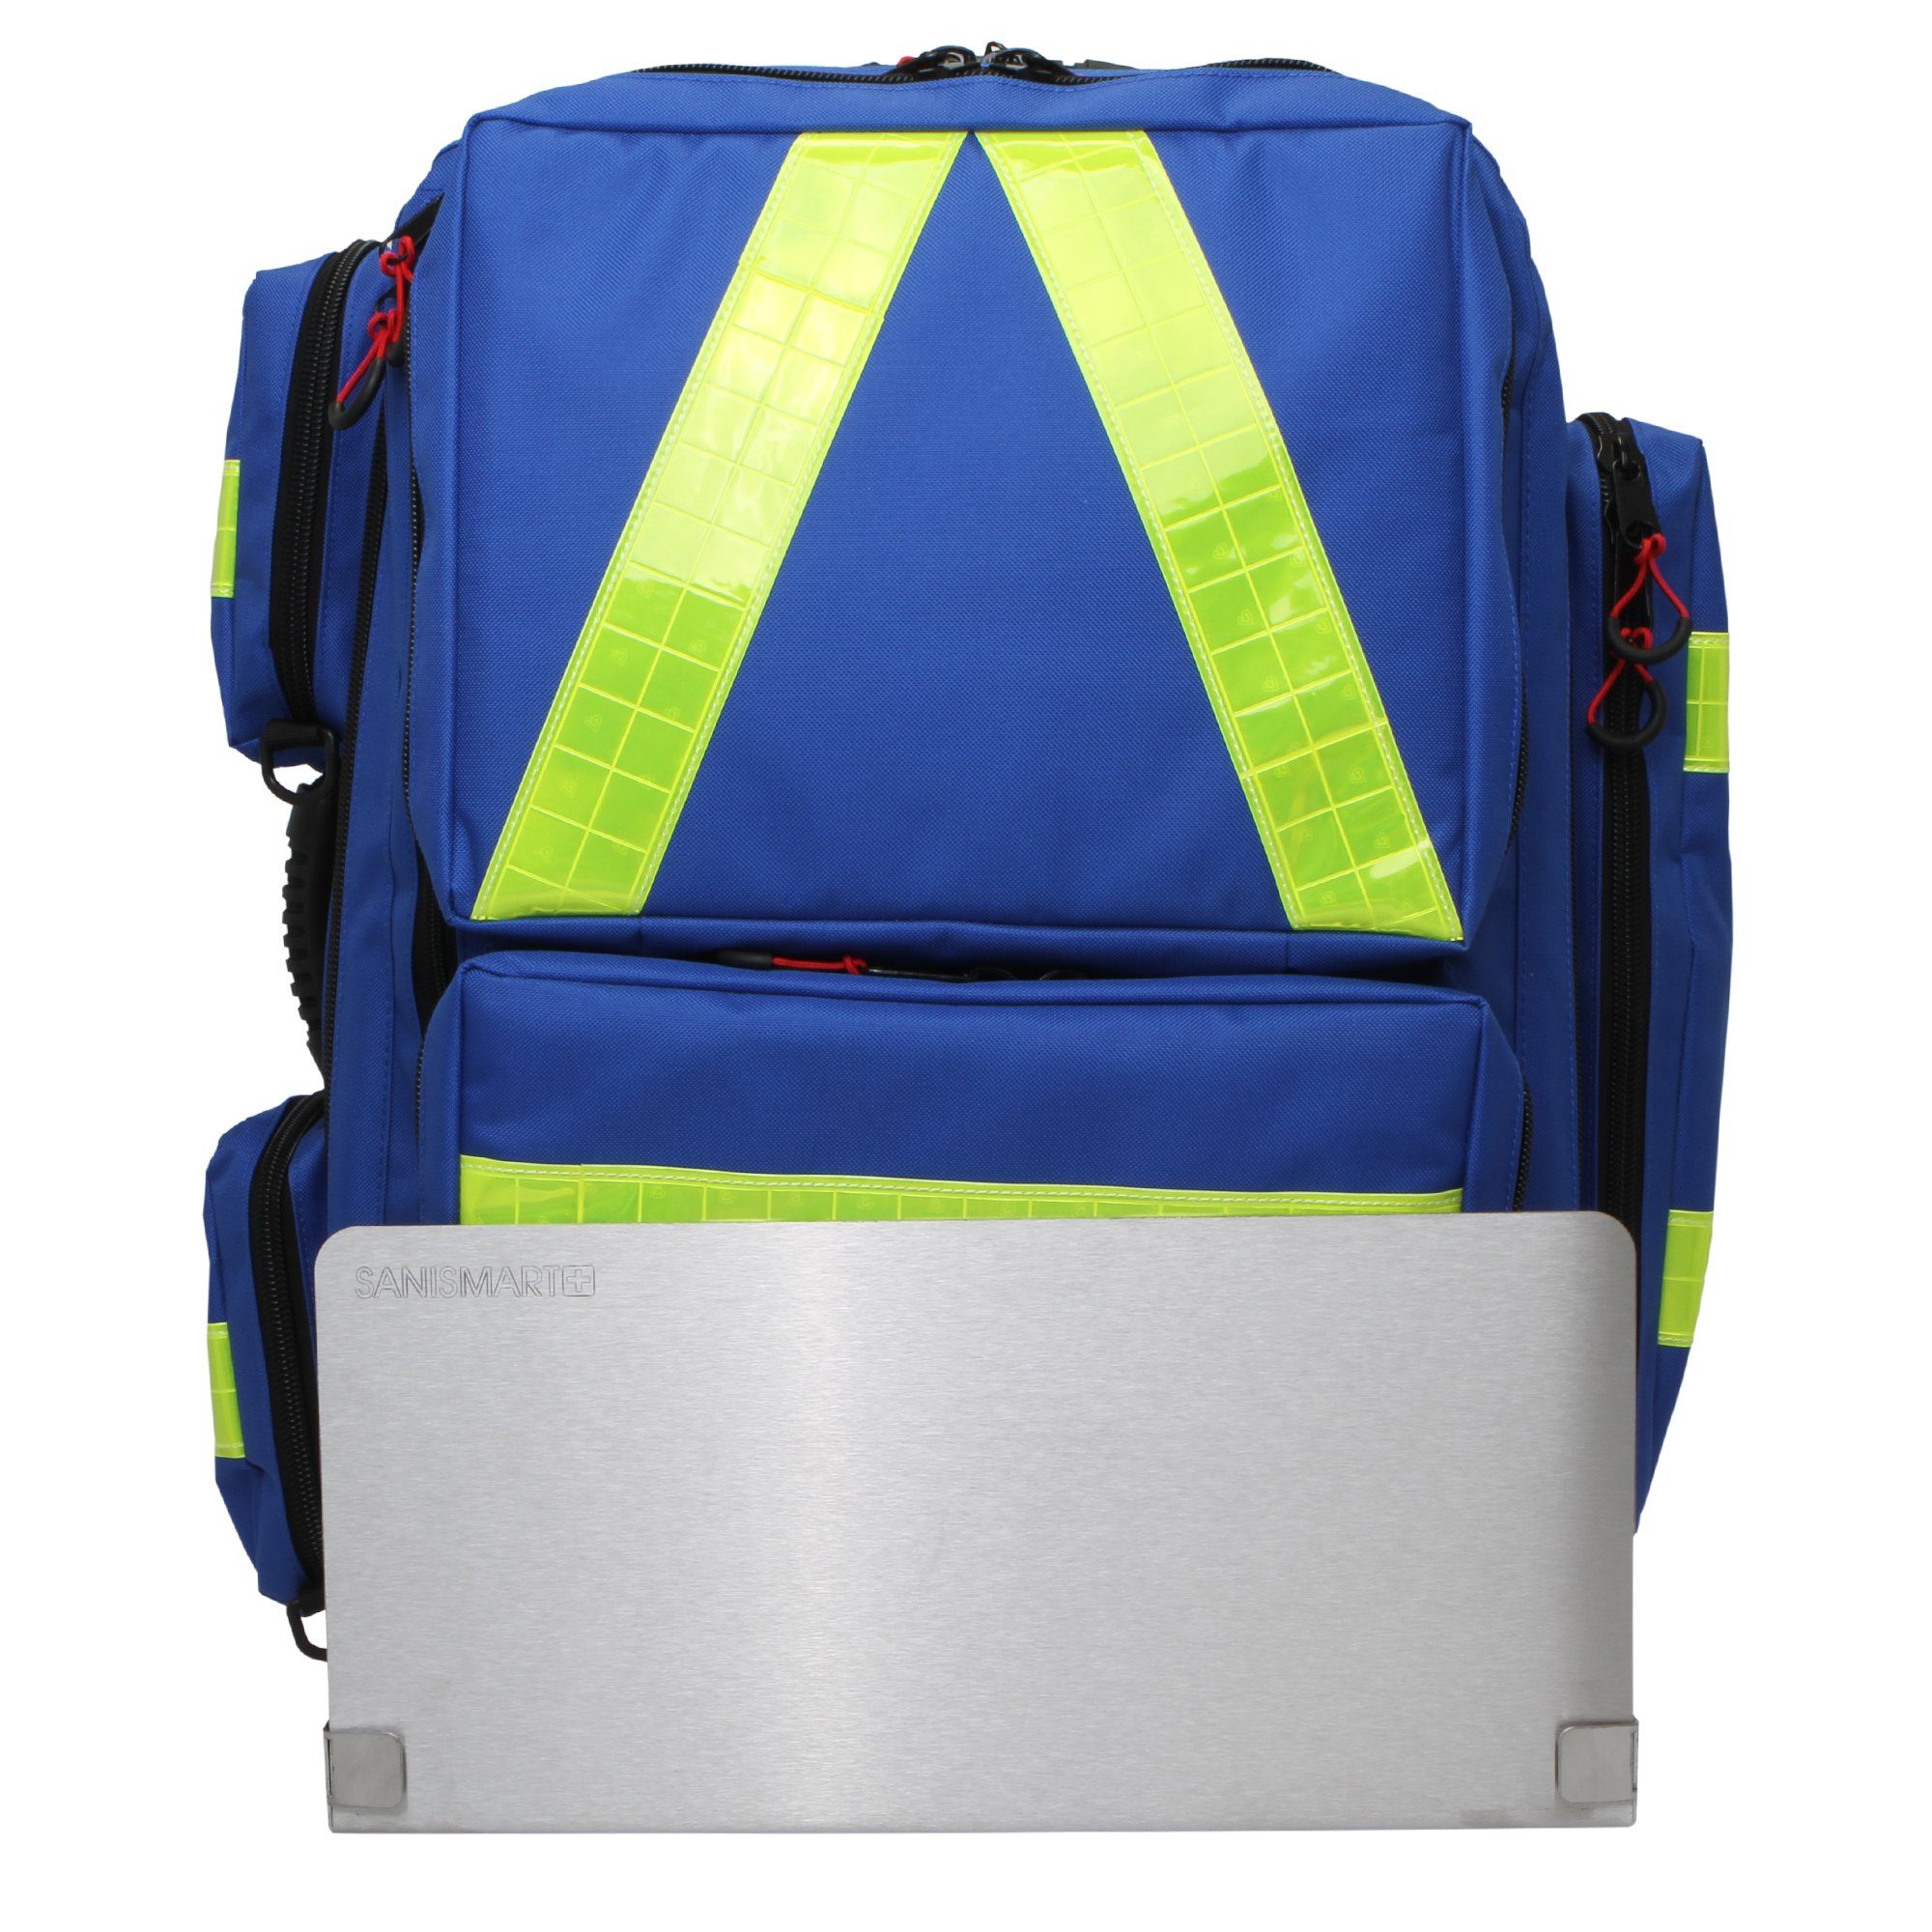 SANISMART Arzttasche Wandhalterung für Notfallrucksäcke mit Notfallrucksack Medicus XL Blau Nylon